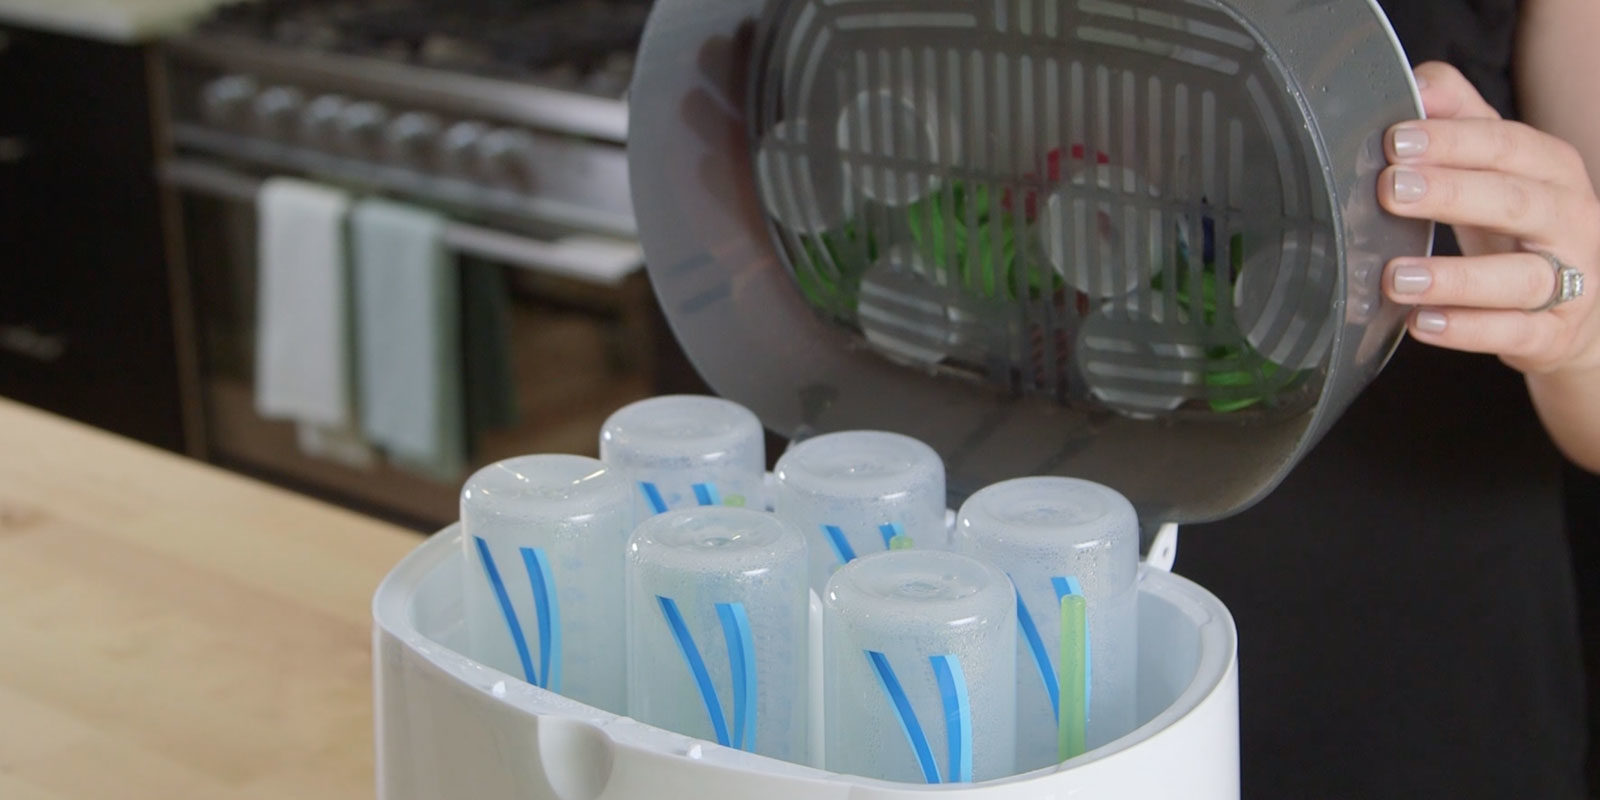 sanitizing baby bottles